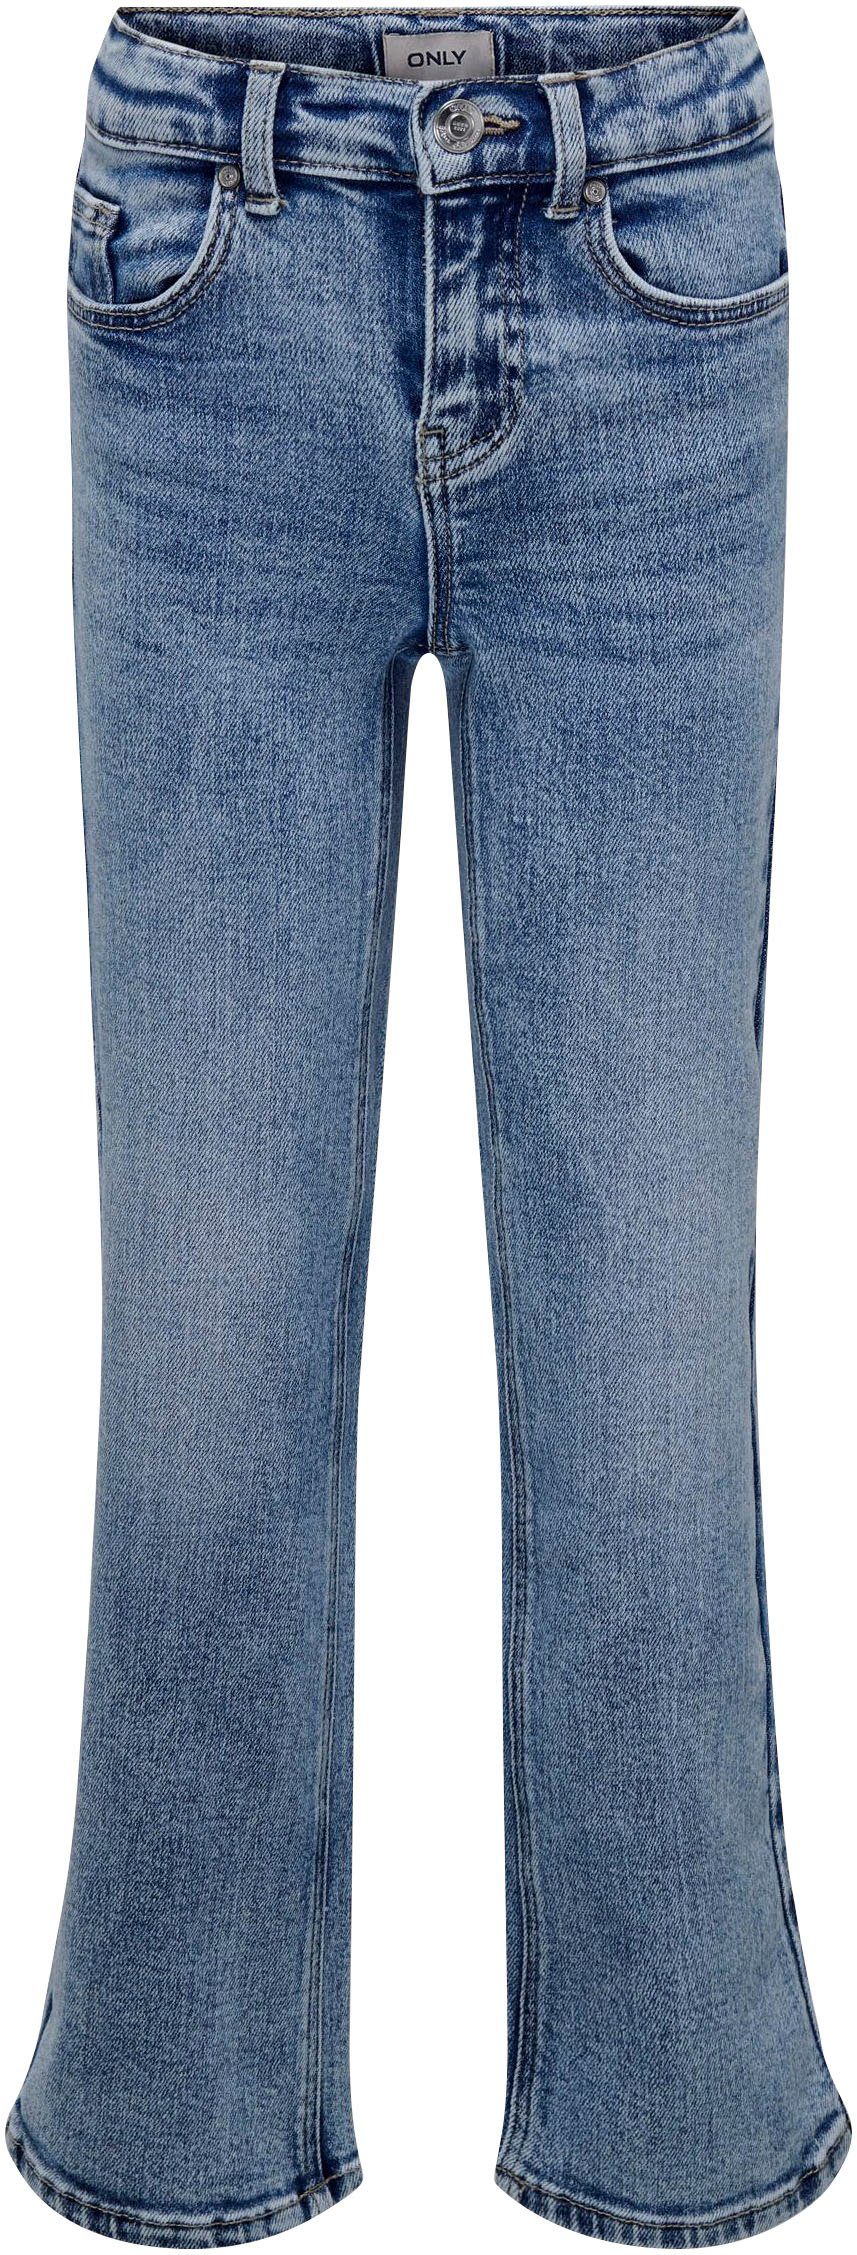 WIDE KOGJUICY 5-Pocket-Jeans DN KIDS LEG ONLY DEST